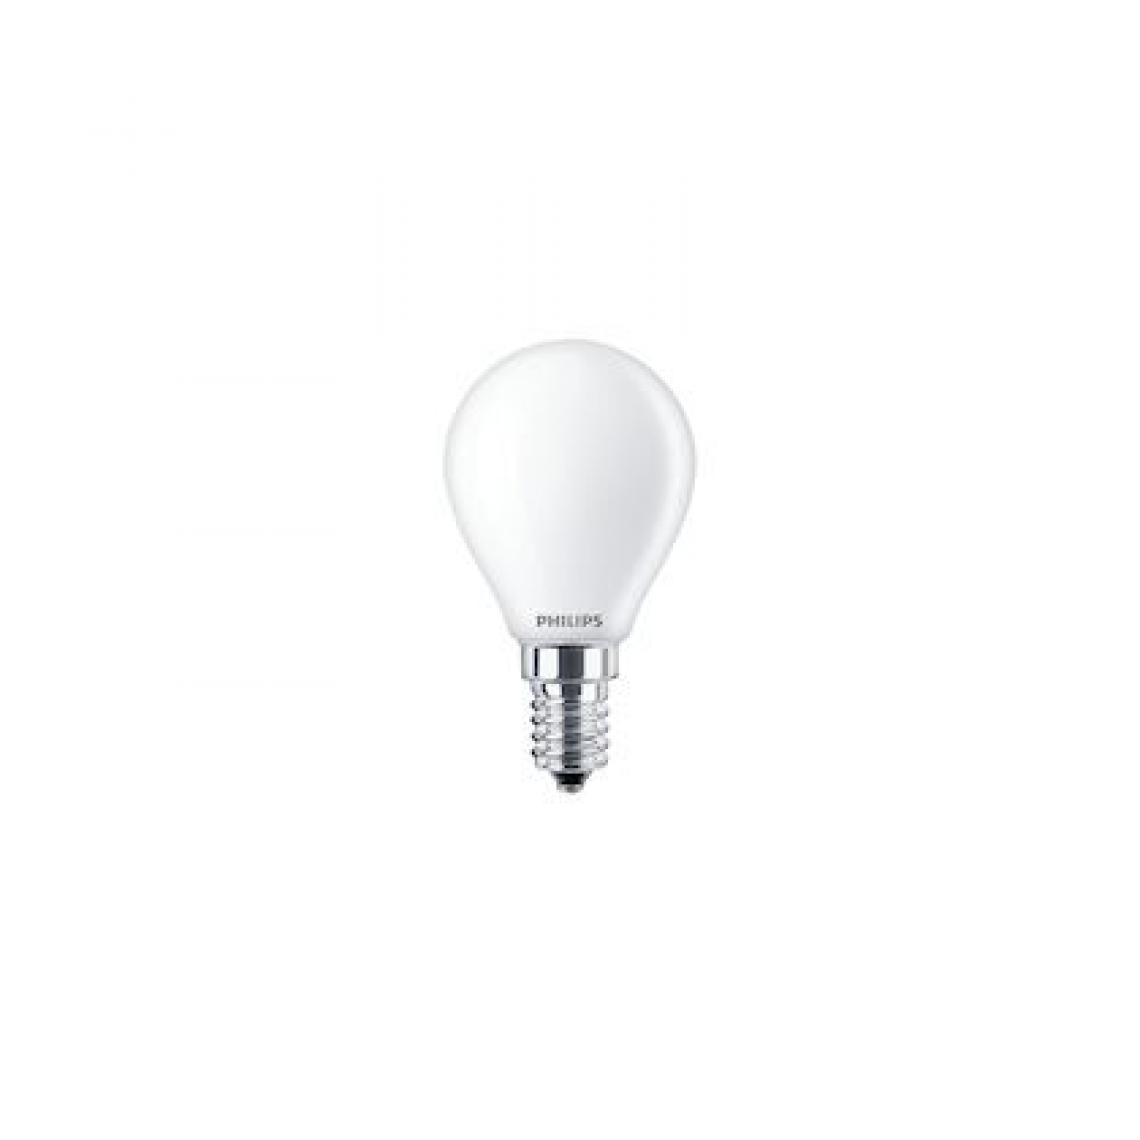 Philips - ampoule à led - philips cla ledluster nd - e14 - 4.3w - 2700k - p45 - fr - philips 706435 - Ampoules LED